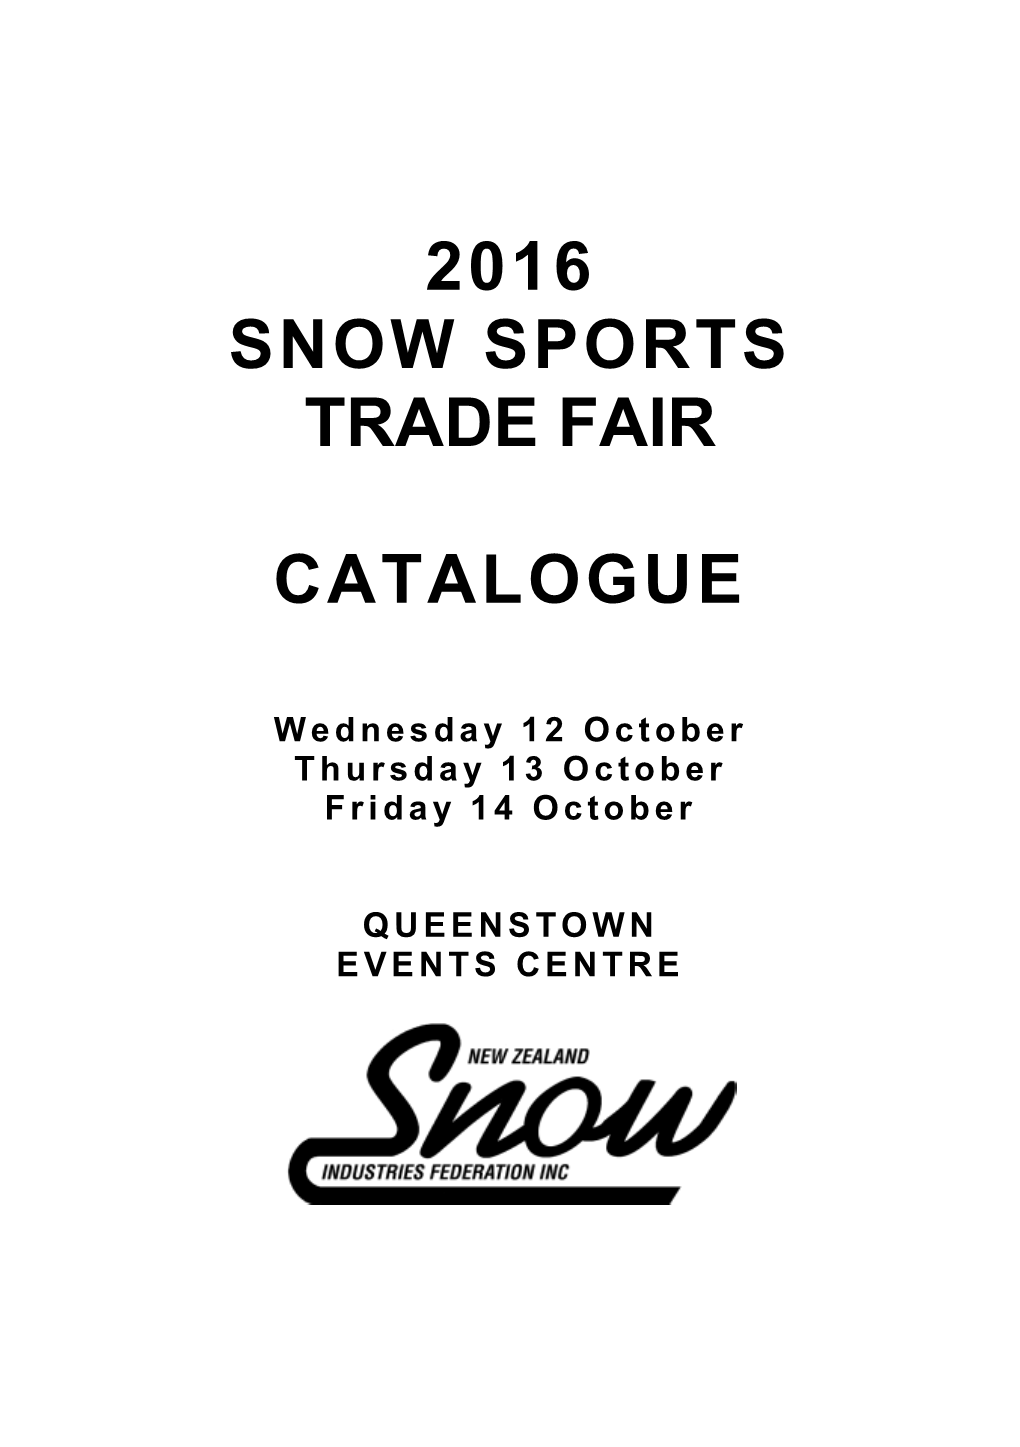 2016 Snow Sports Trade Fair Catalogue